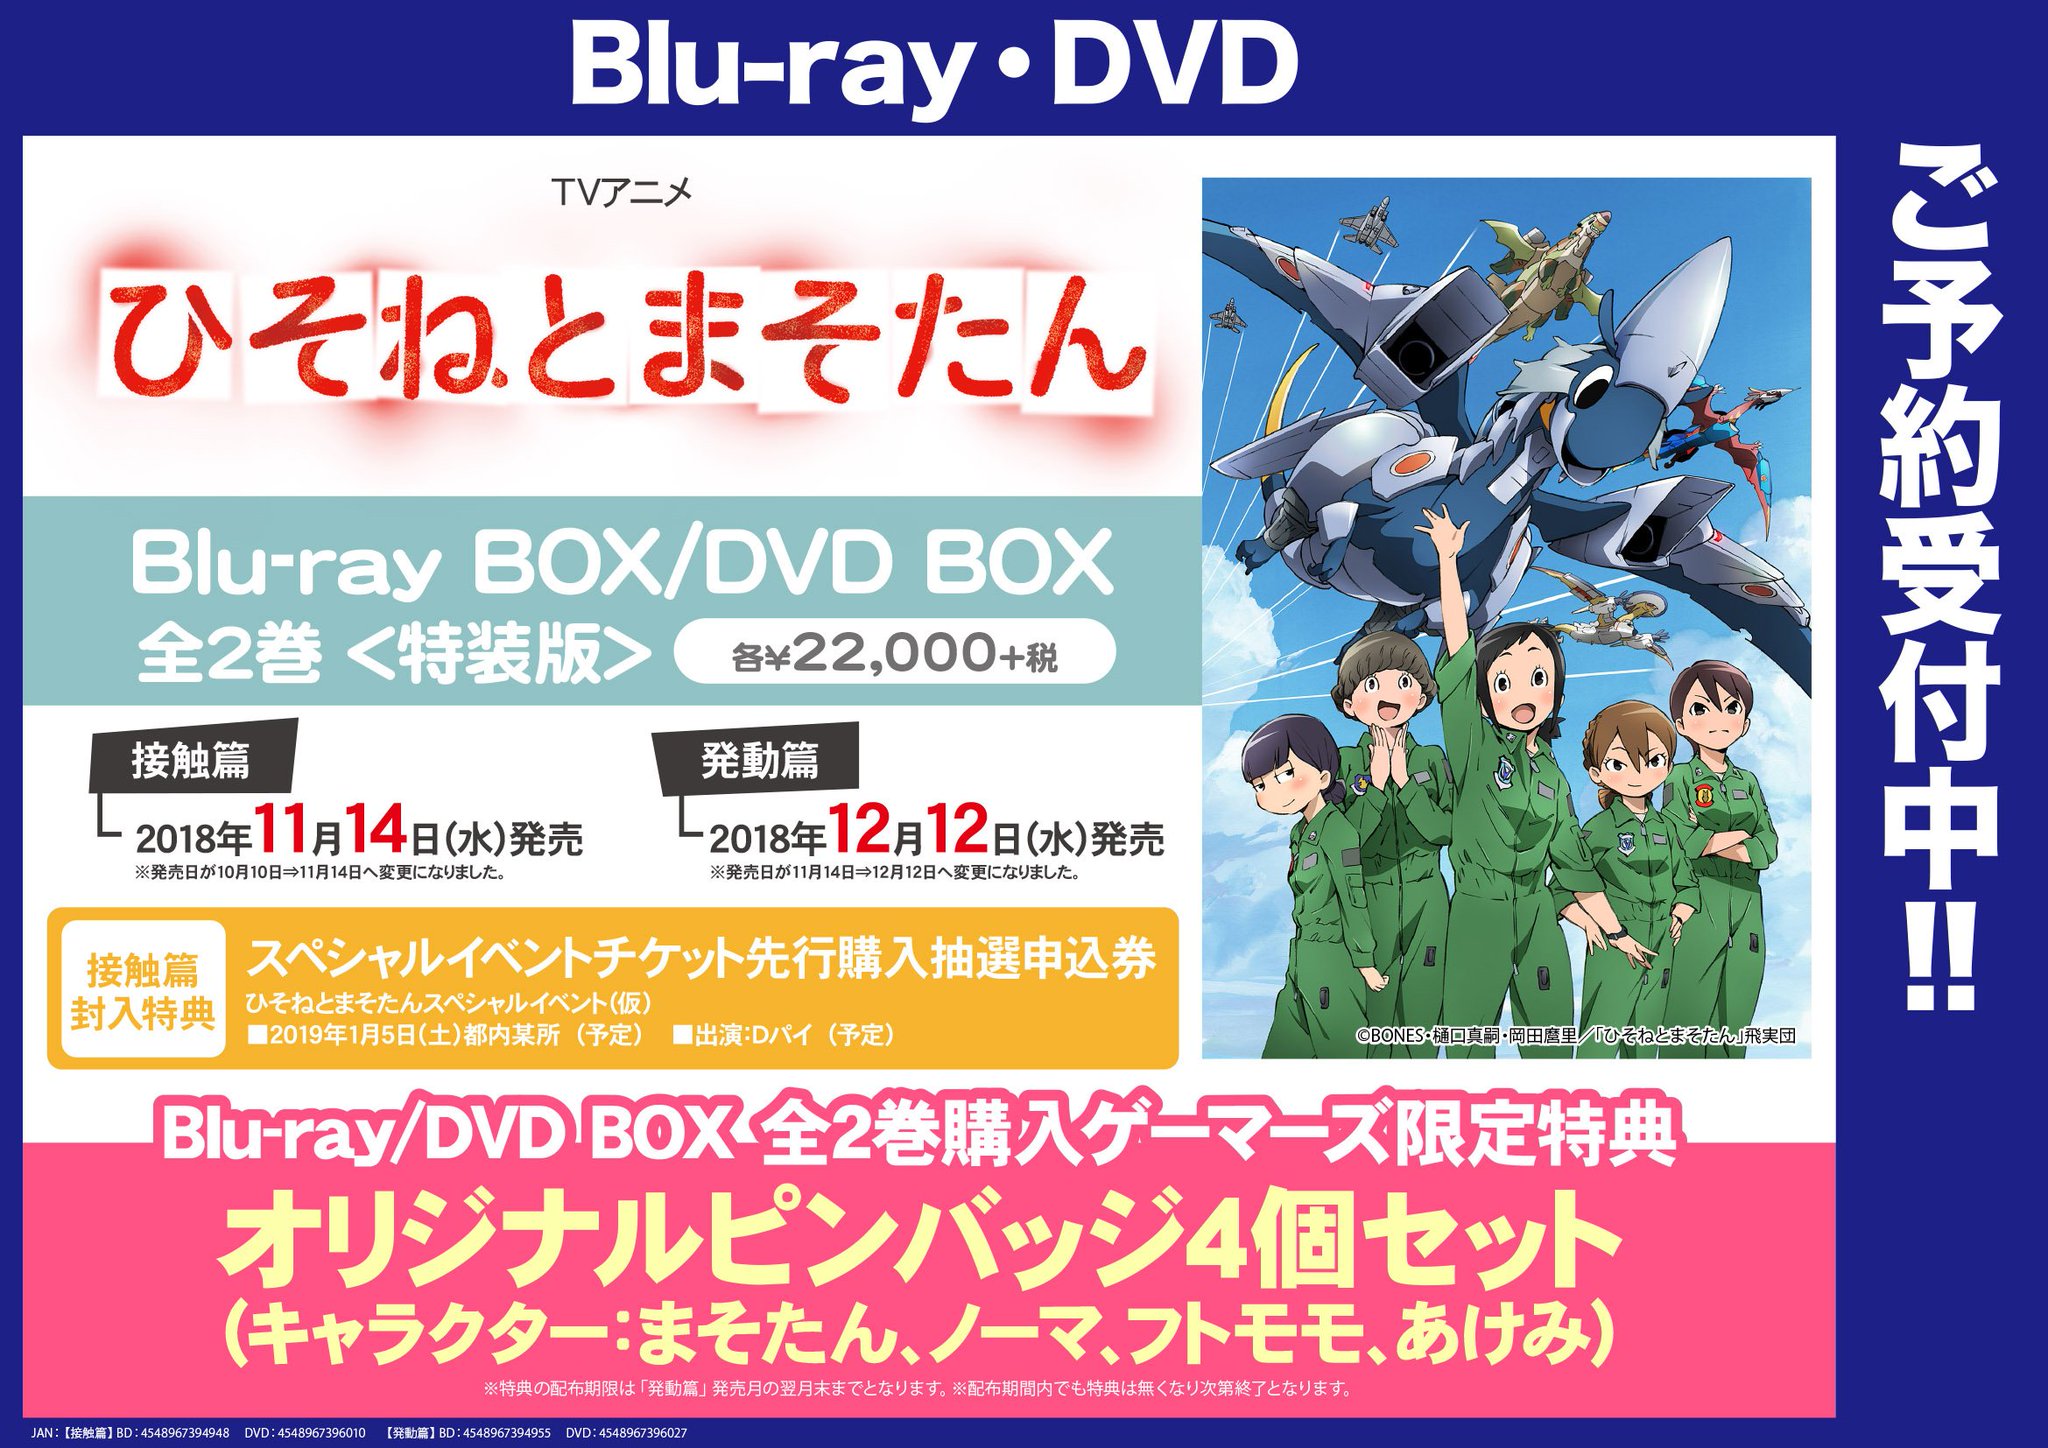 ひそねとまそたん Blu-ray BOX - アニメ